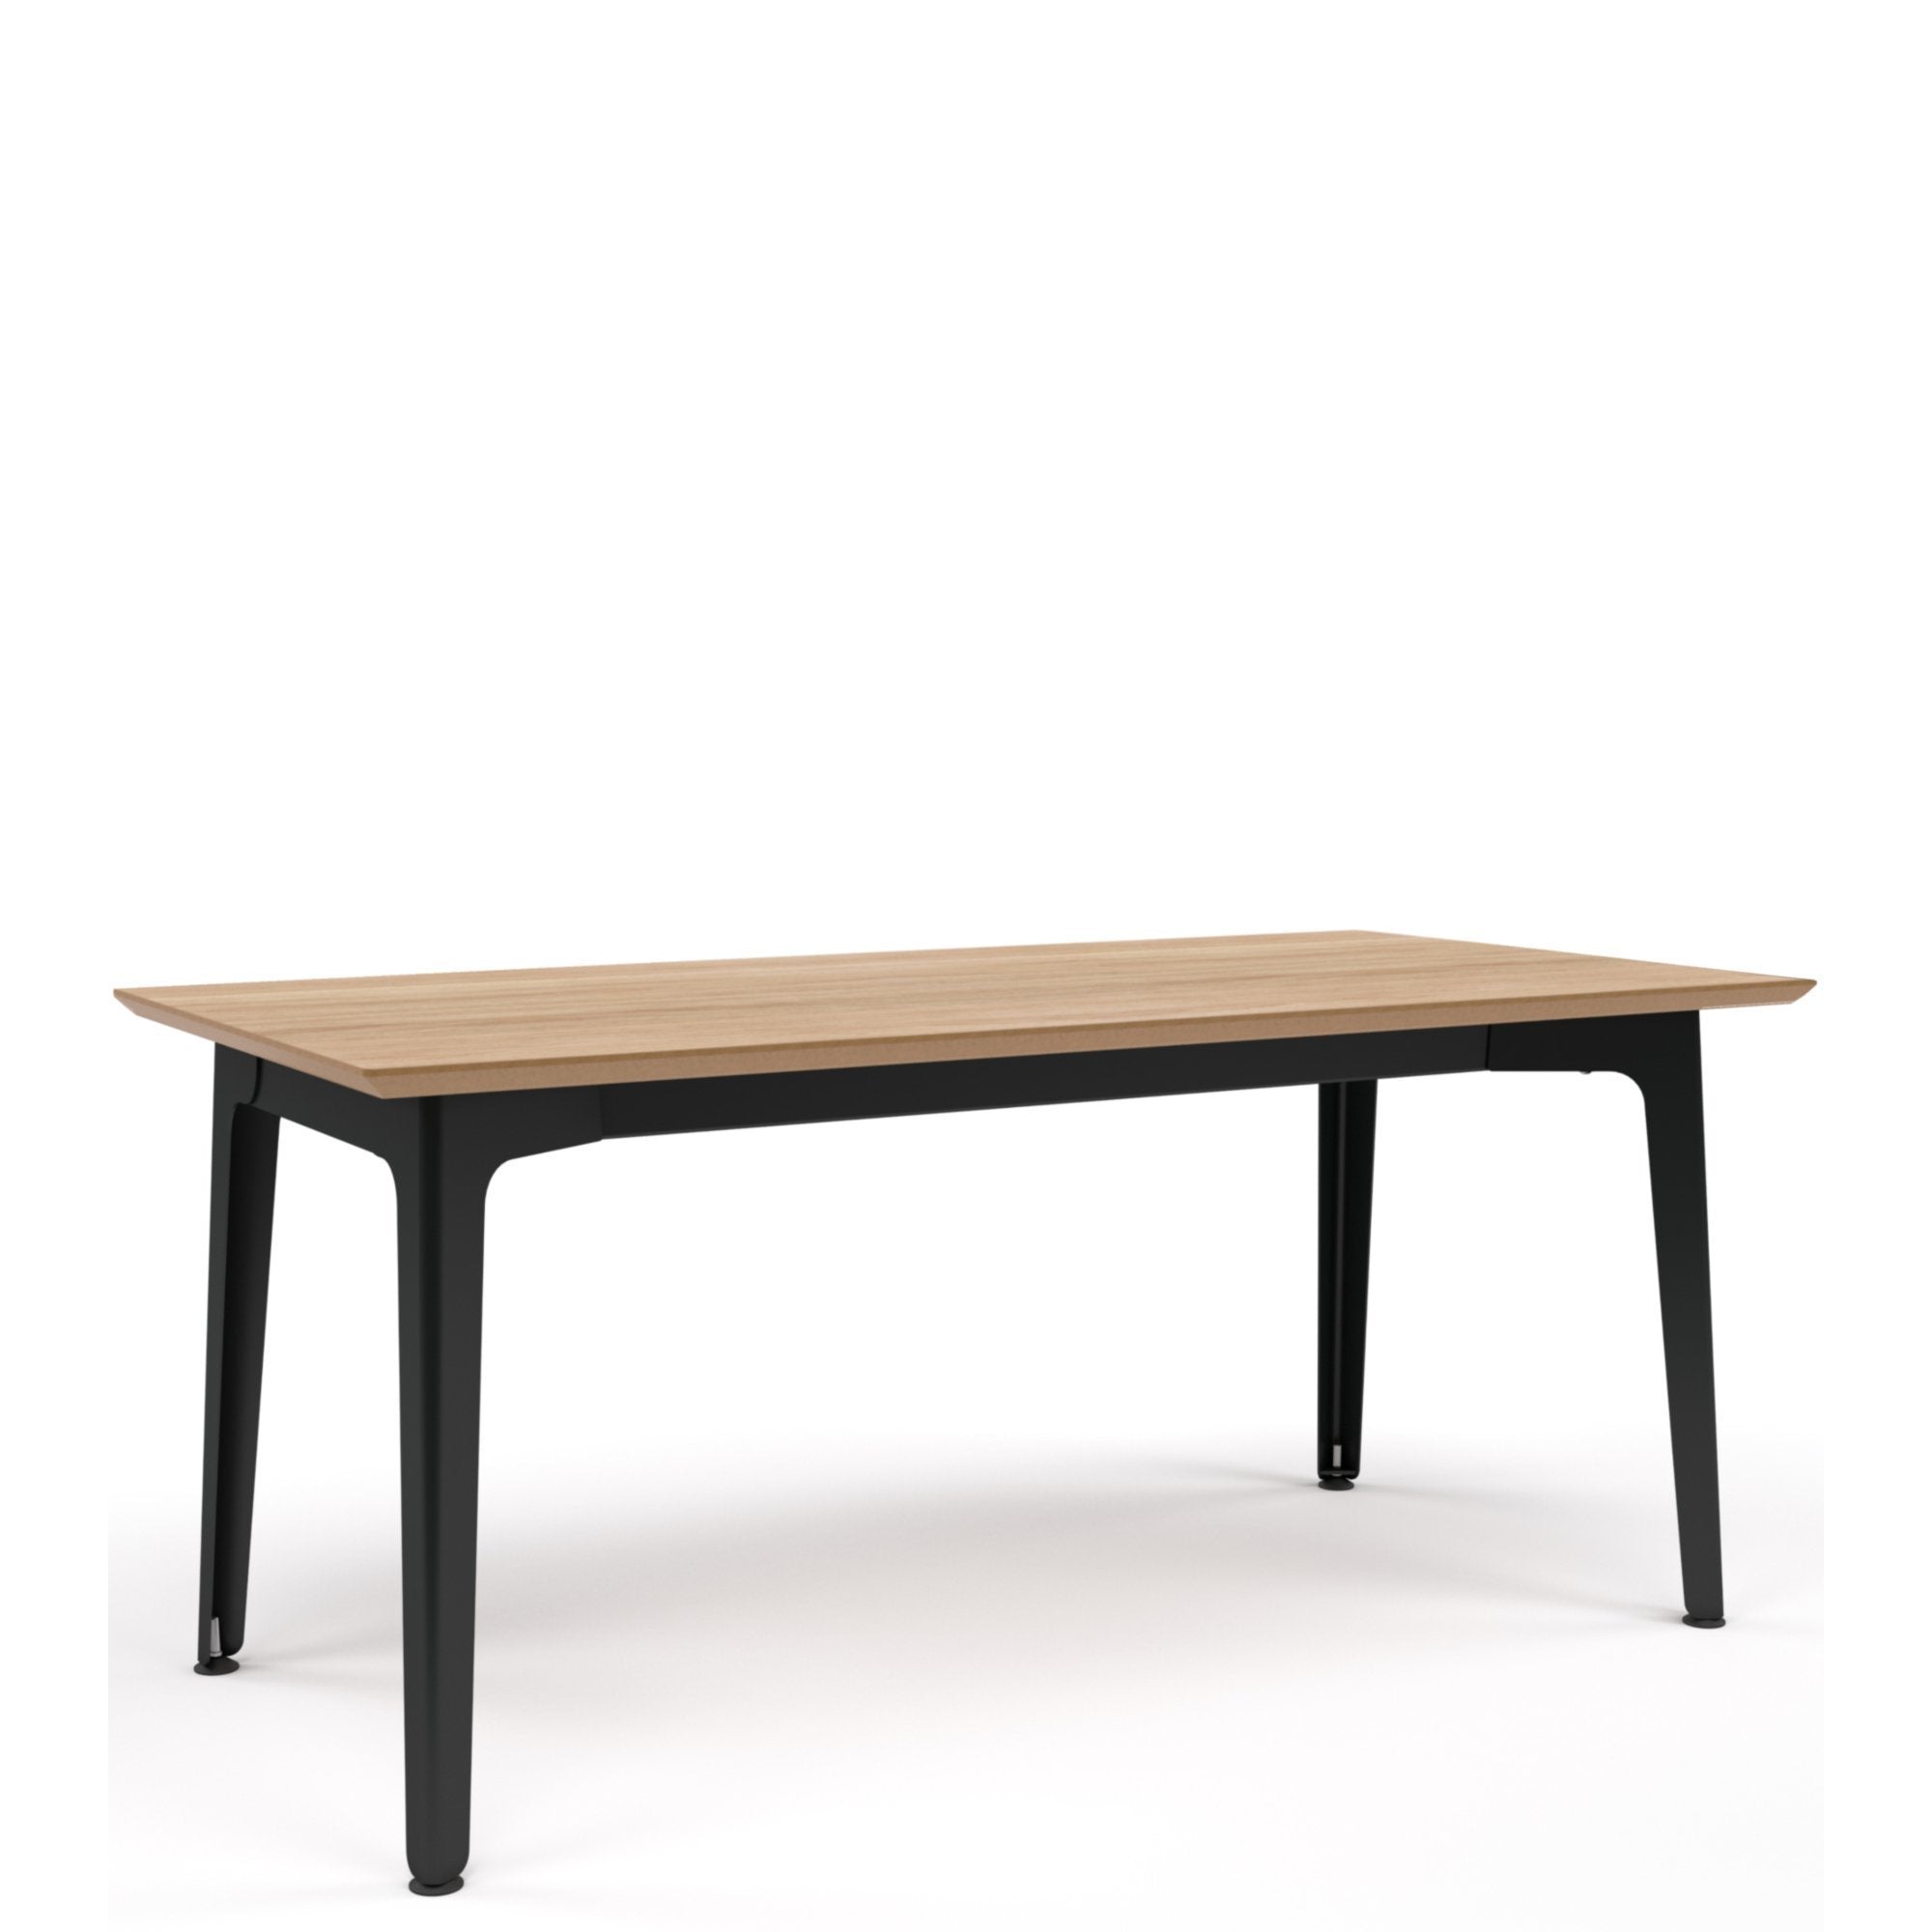 Fold Metal Table 1800x800